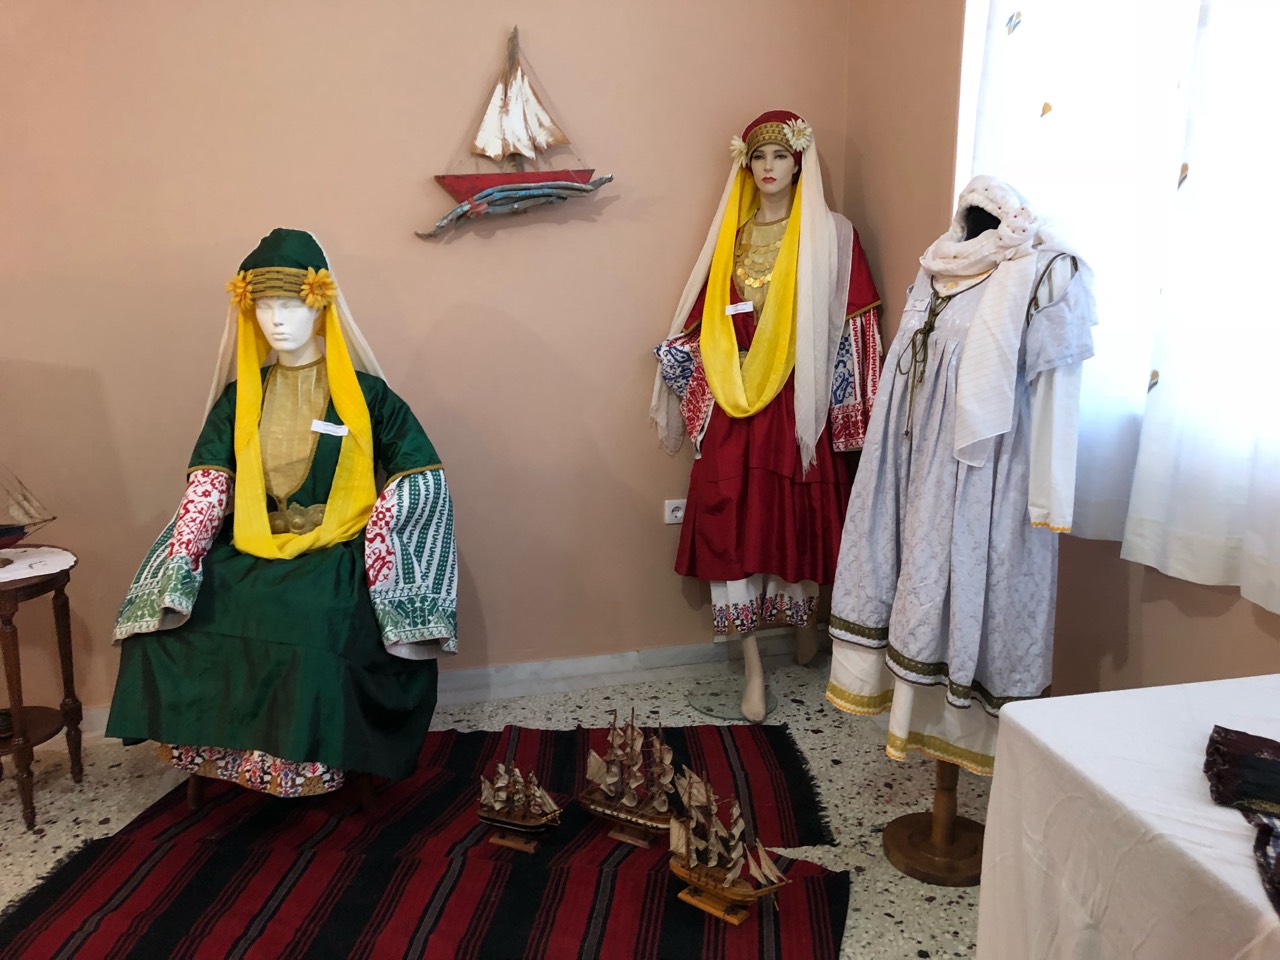 Επίσκεψη στην έκθεση Φωτογραφίας και Παραδοσιακής Φορεσιάς